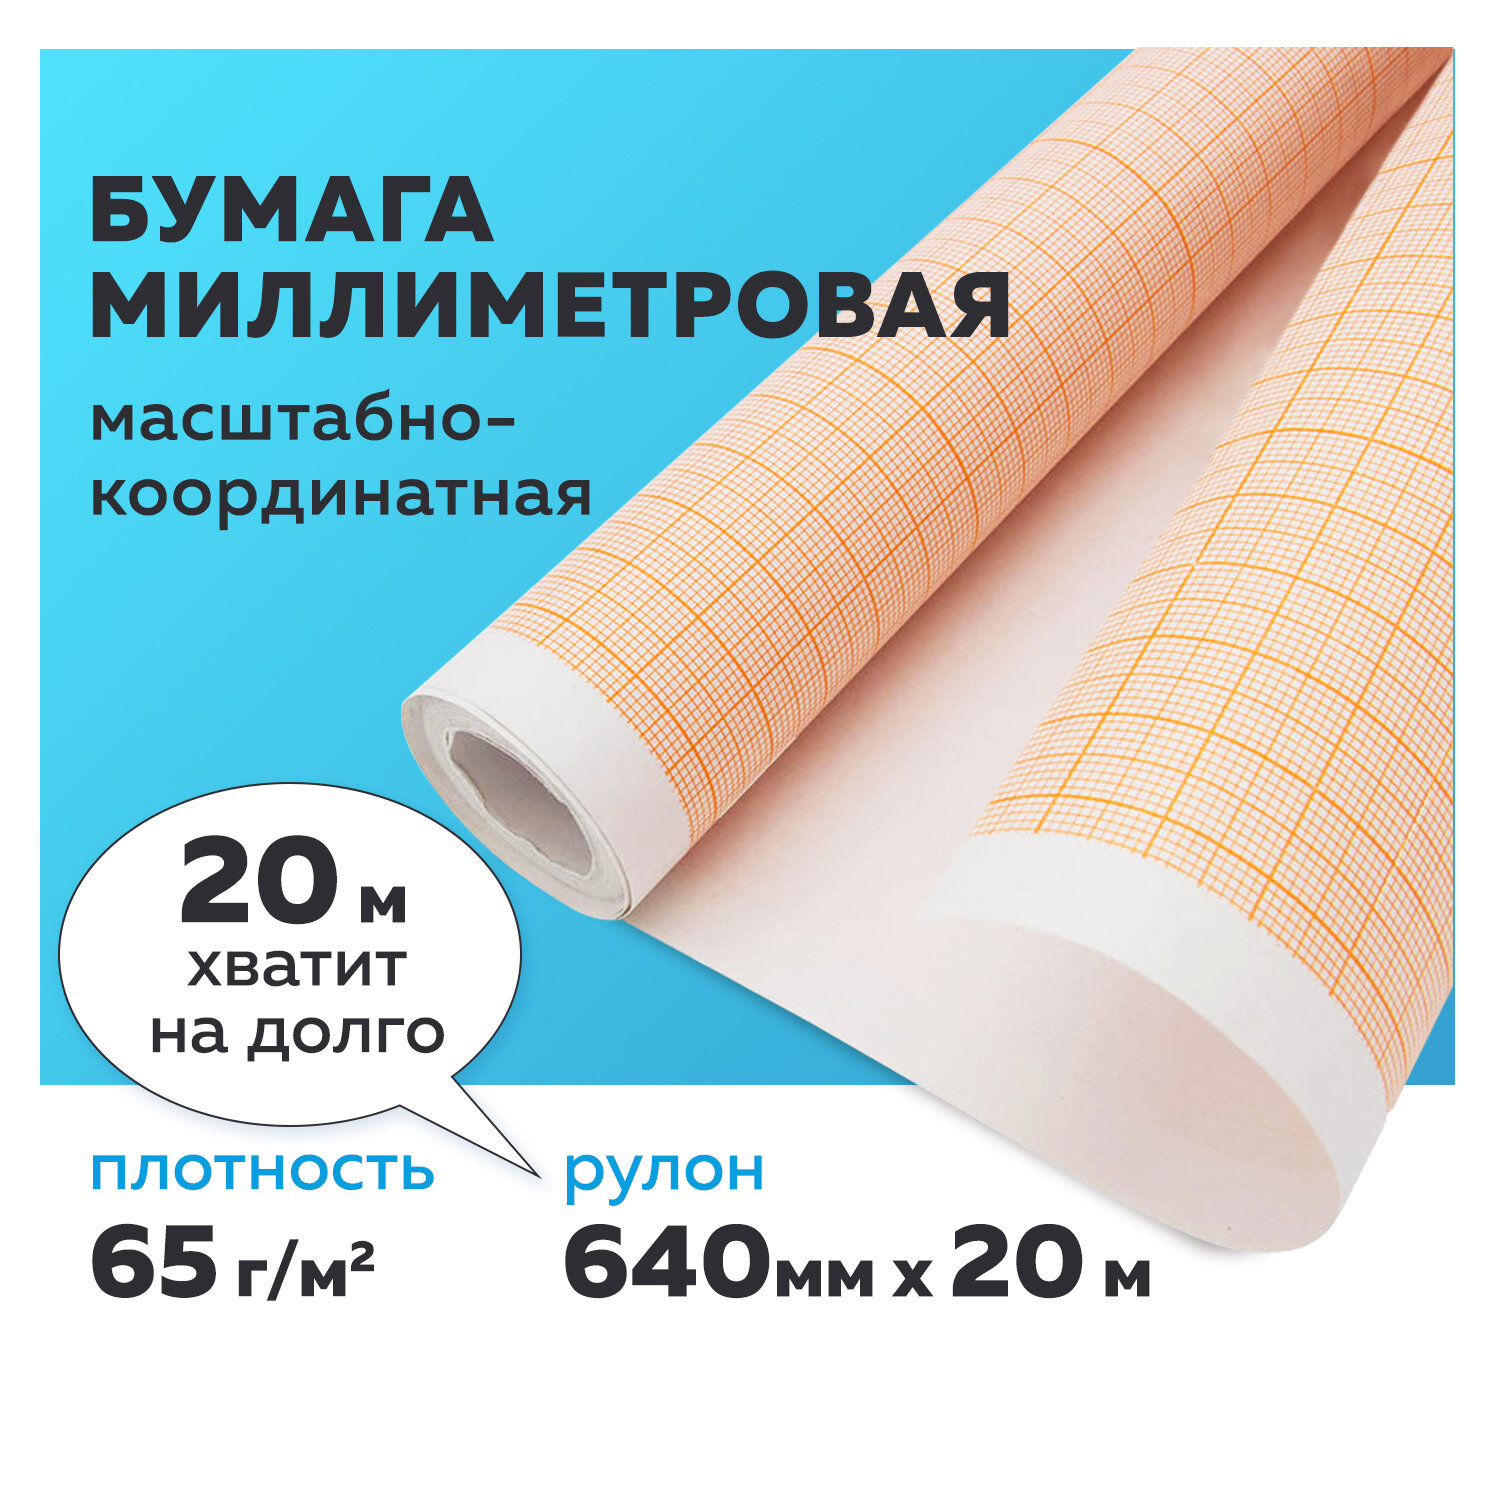 Миллиметровая бумага Staff рулон для выкроек и черчения 20 метров 640мм x 20м оранжевая - фото 1